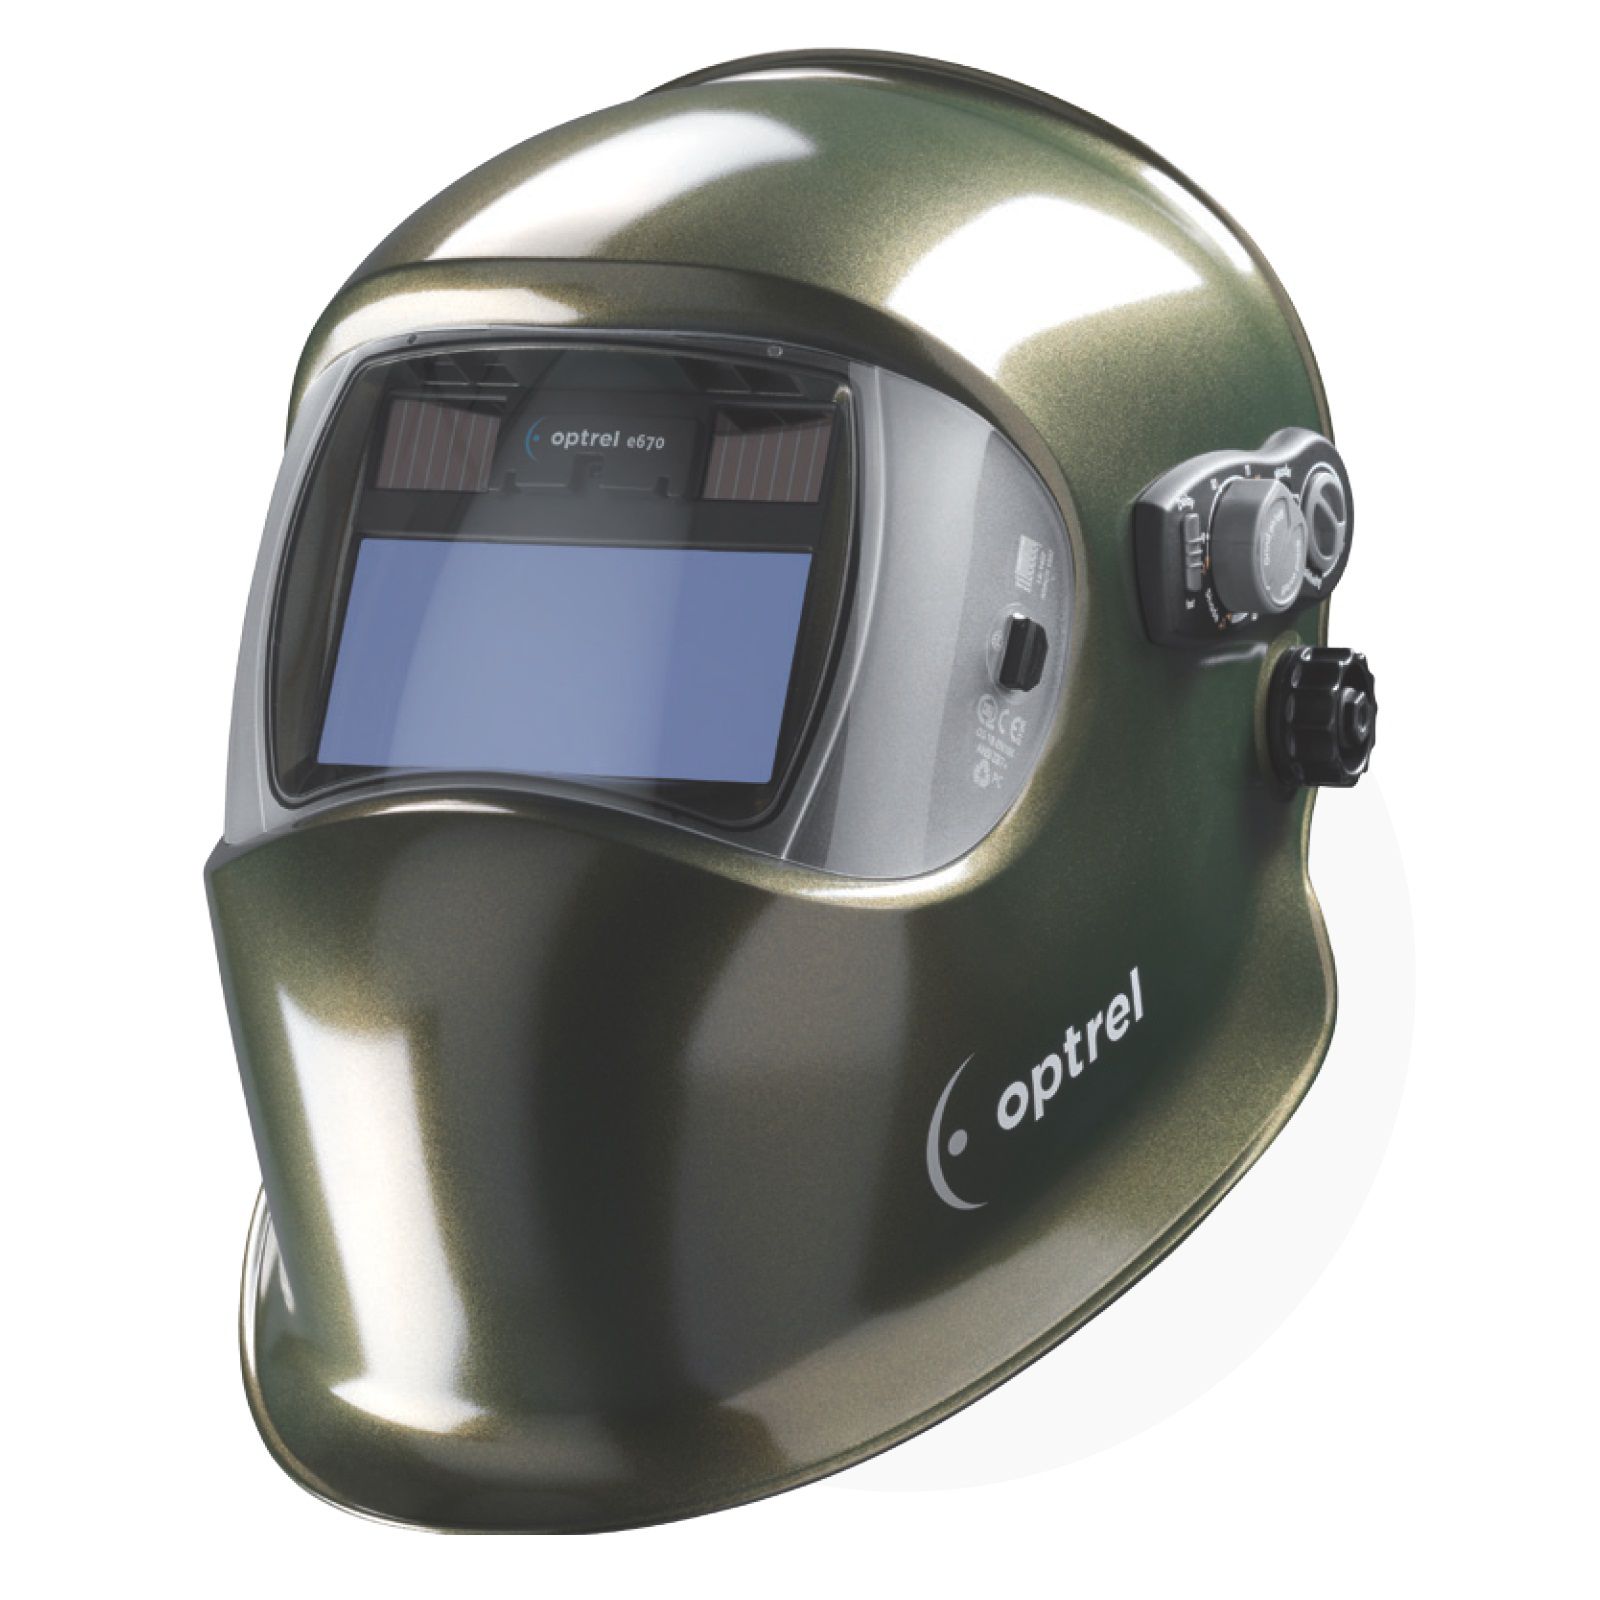 Сварочная маска с автоматическим светофильтром Optrel e670 cosmic green